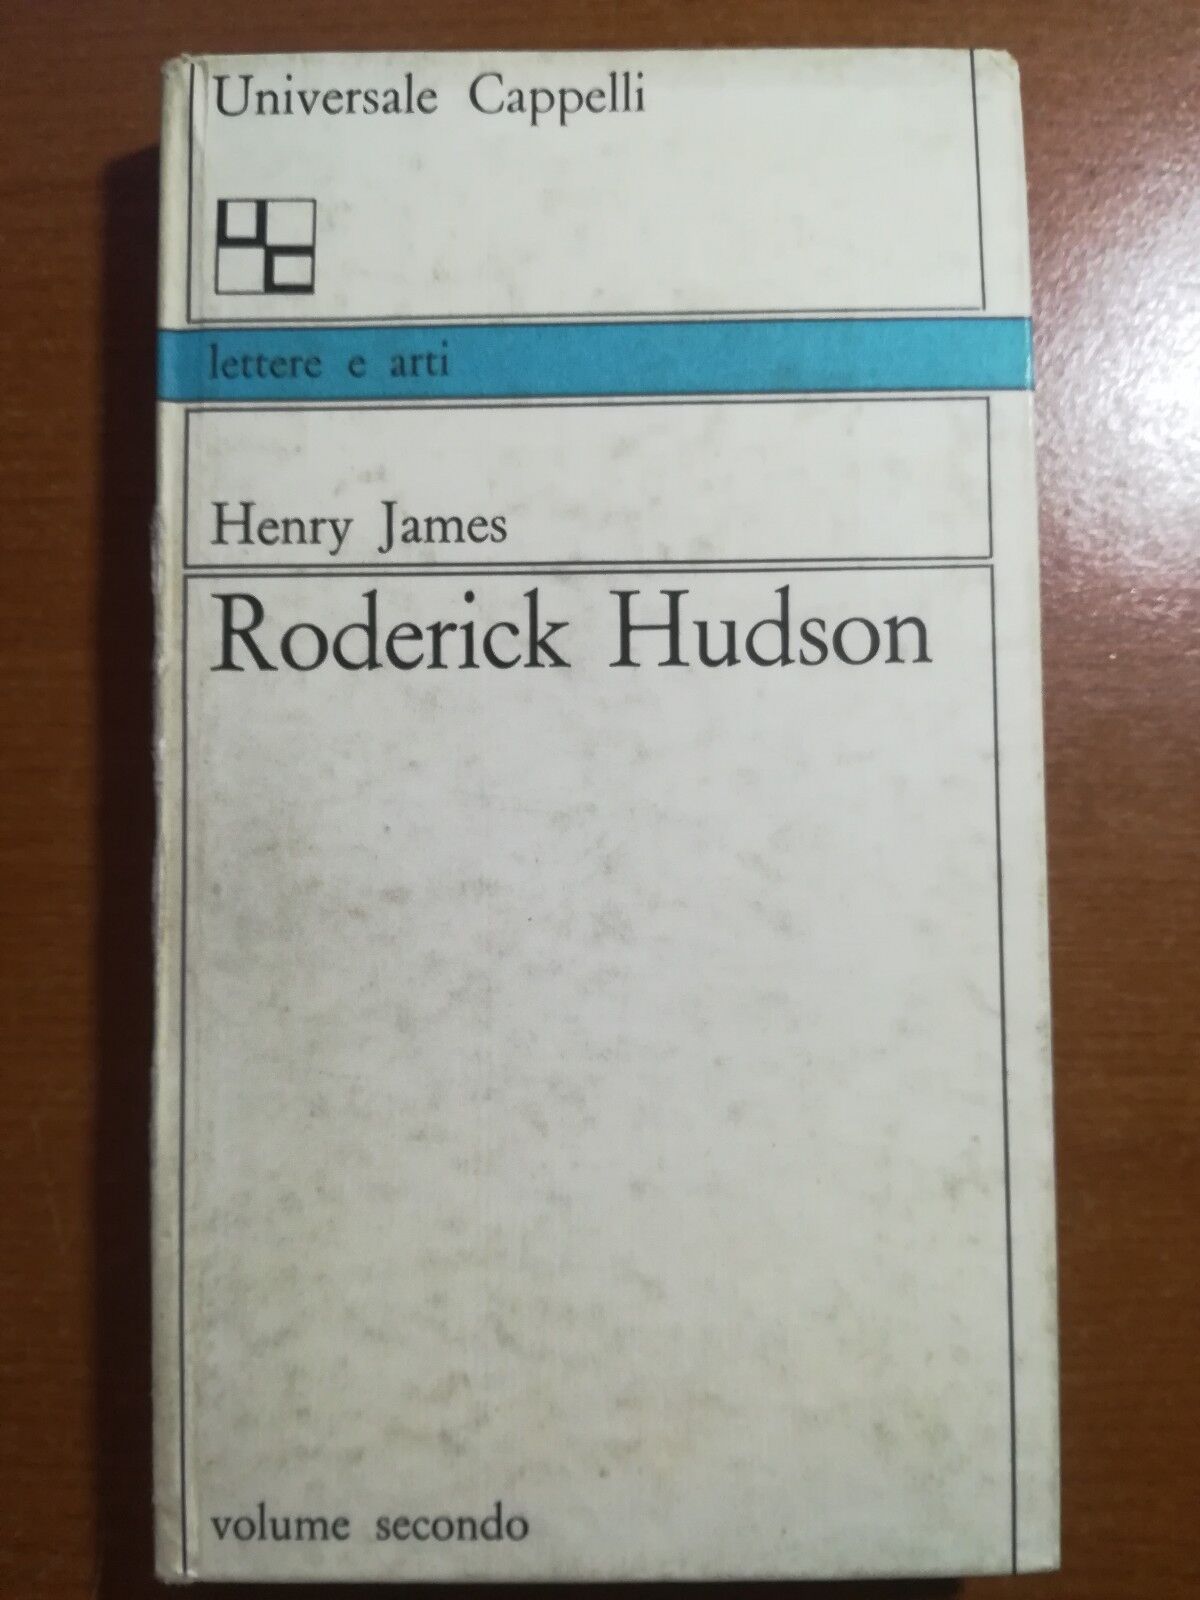 Roderick Hudson - Henry James - Cappelli - 1960 - M